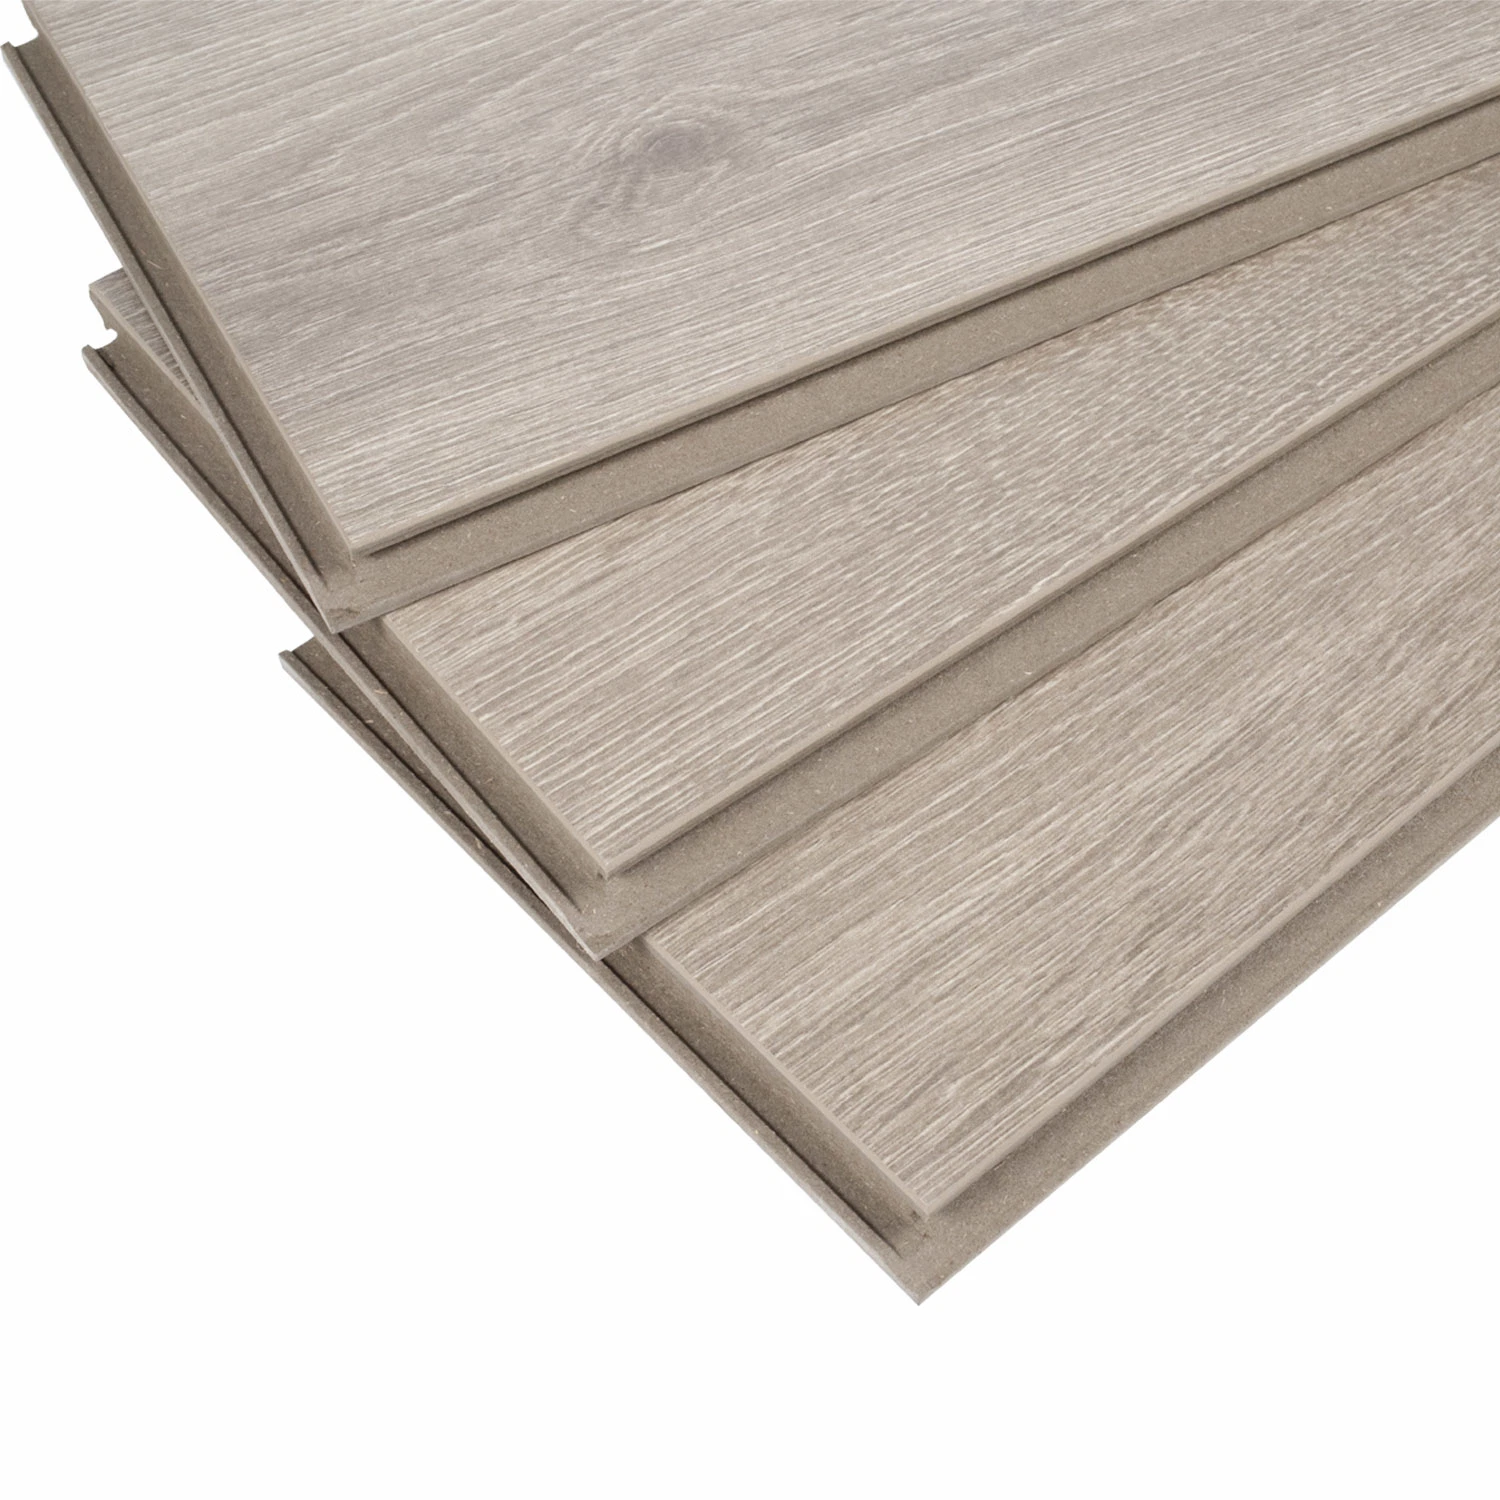 Easy Click Waterproof and Fireproof Floor Laminate Flooring Floor Tile Building Material